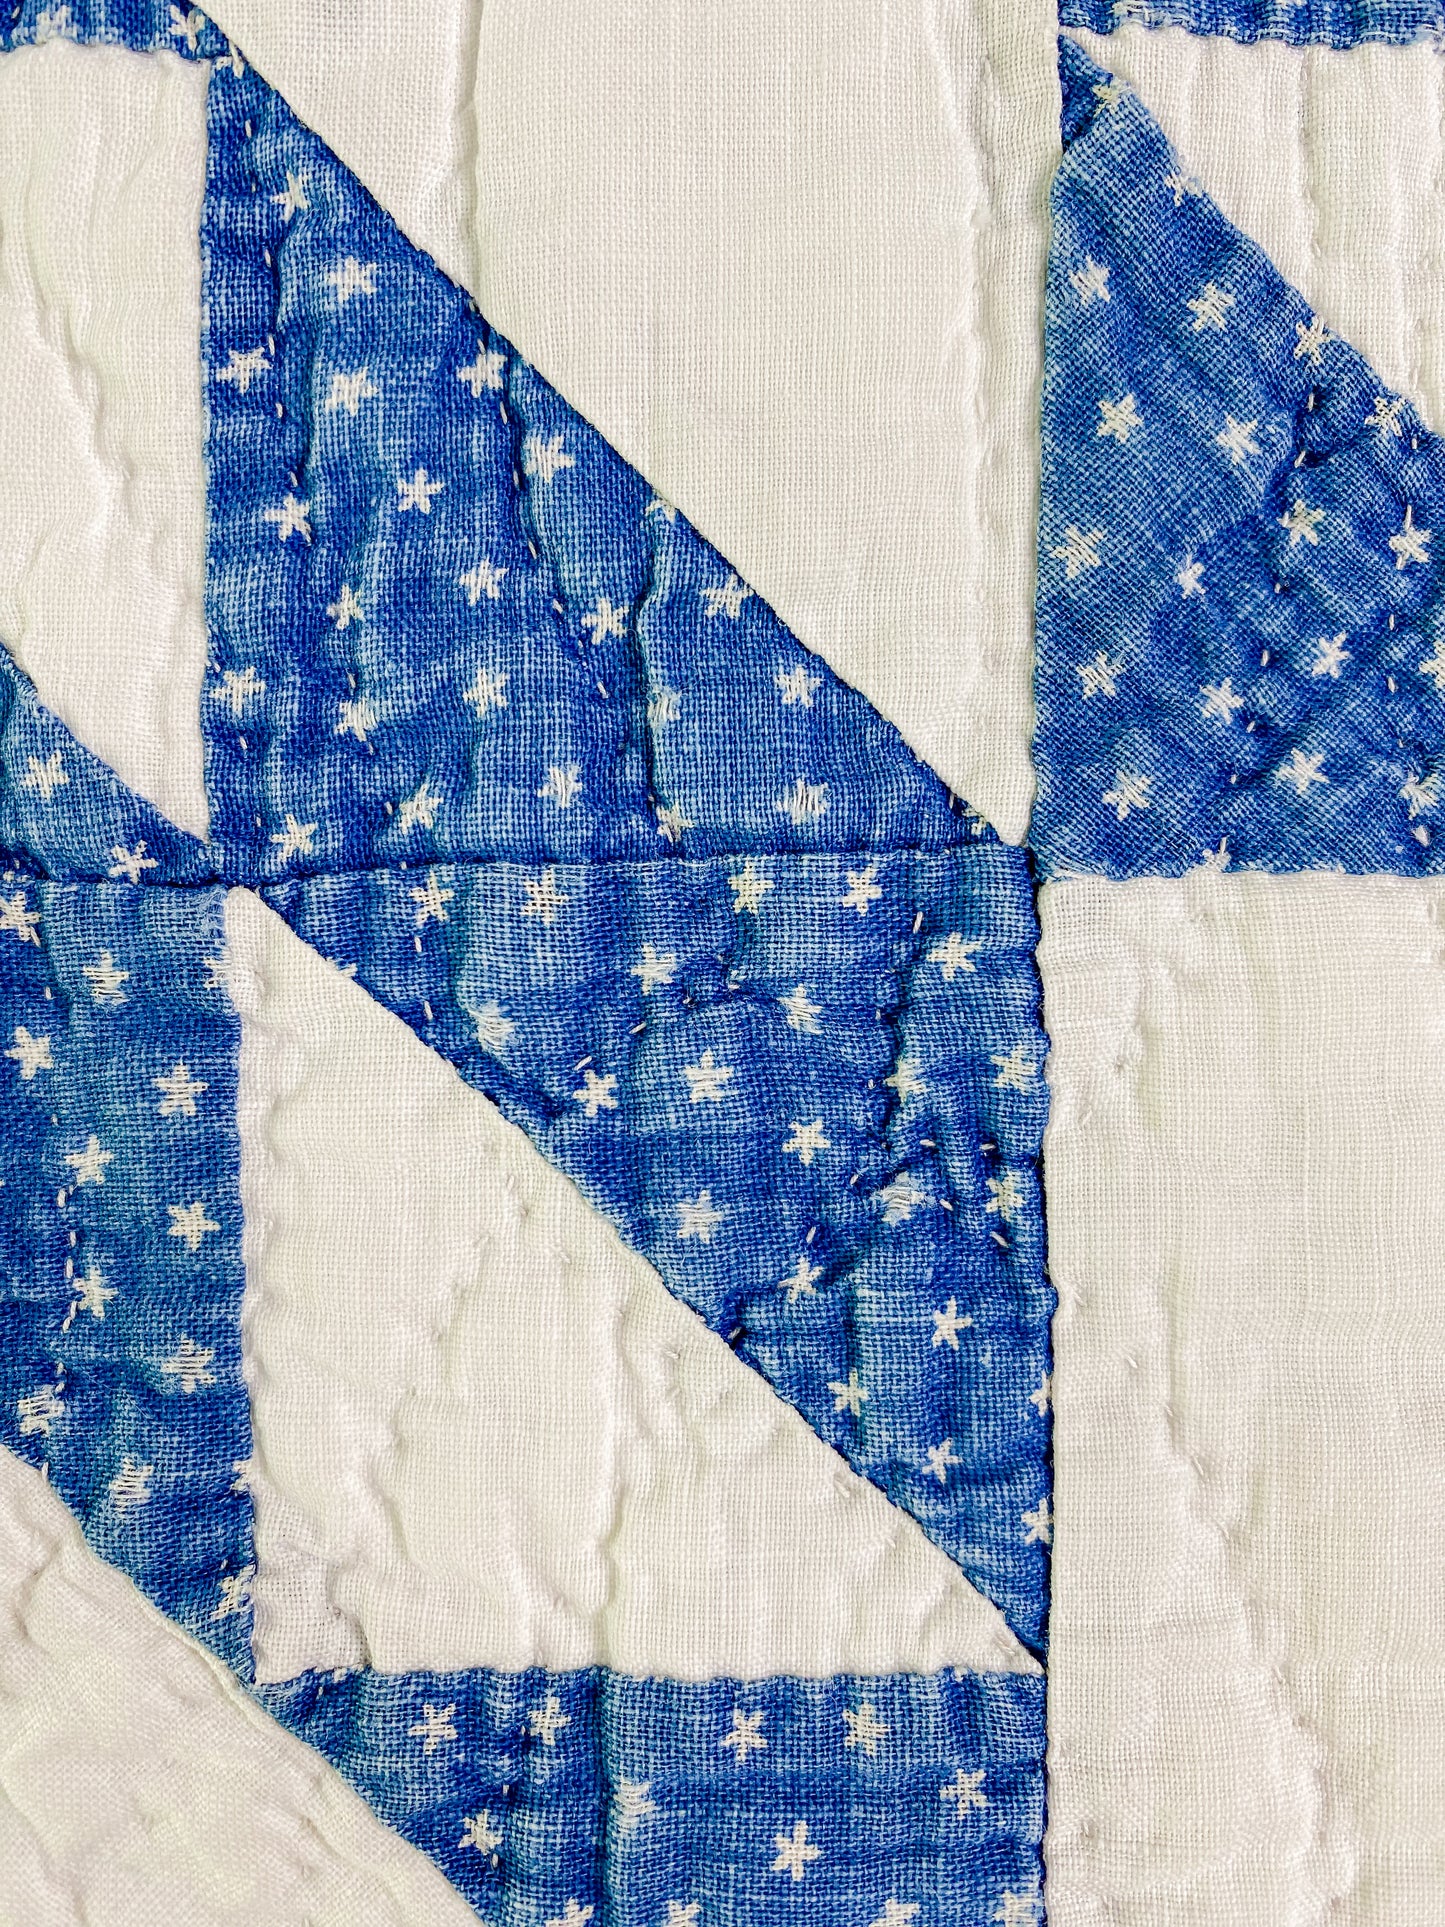 Vintage Blue & White Pinwheel Touching Stars Quilt, c1920